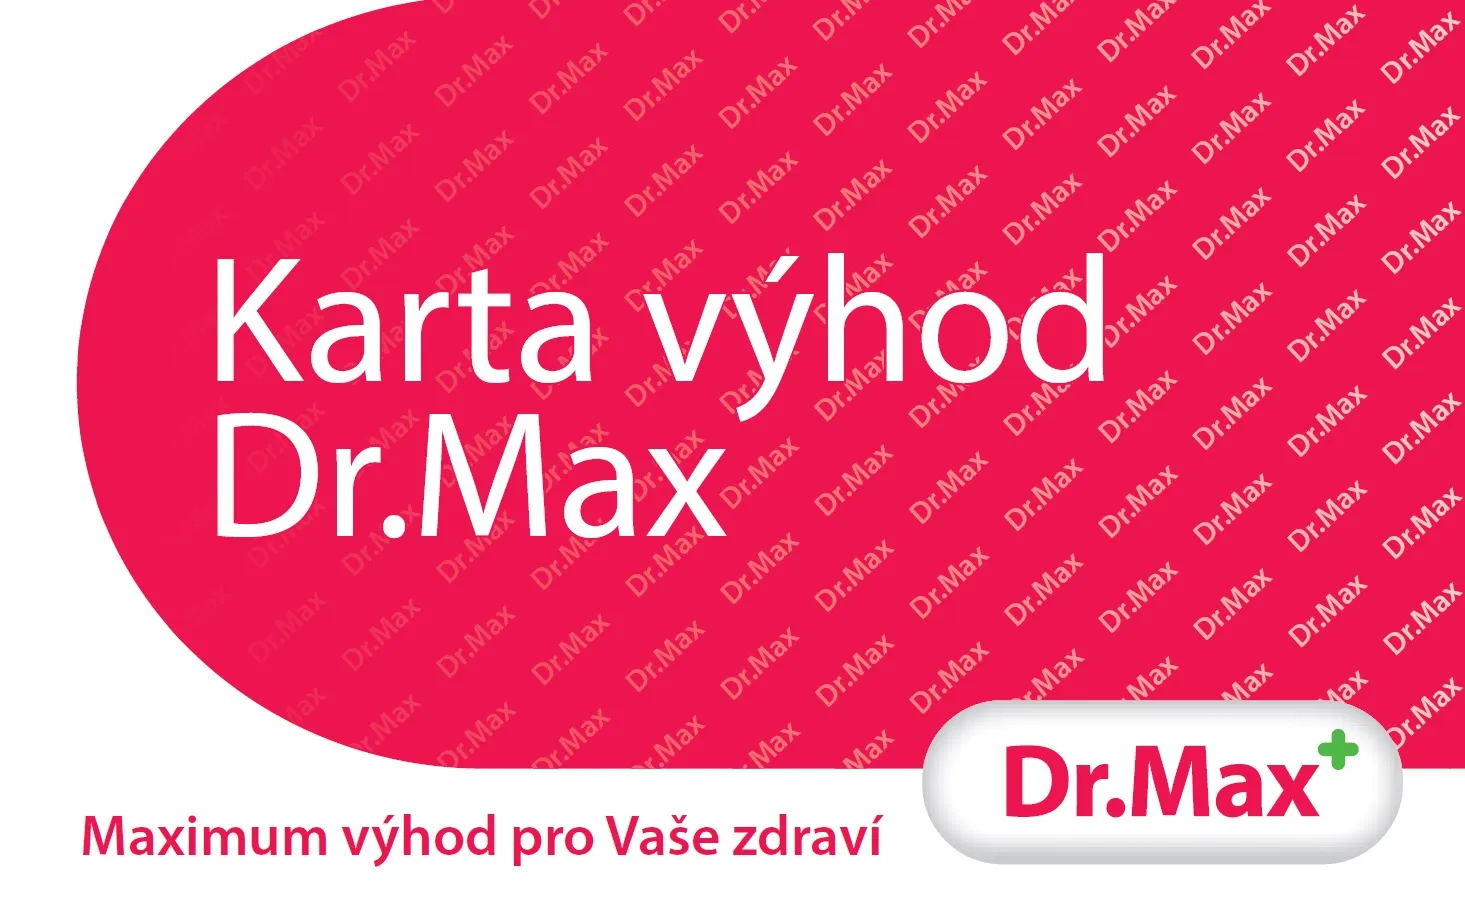 Lékárny Dr. Max zásadně mění klientský program